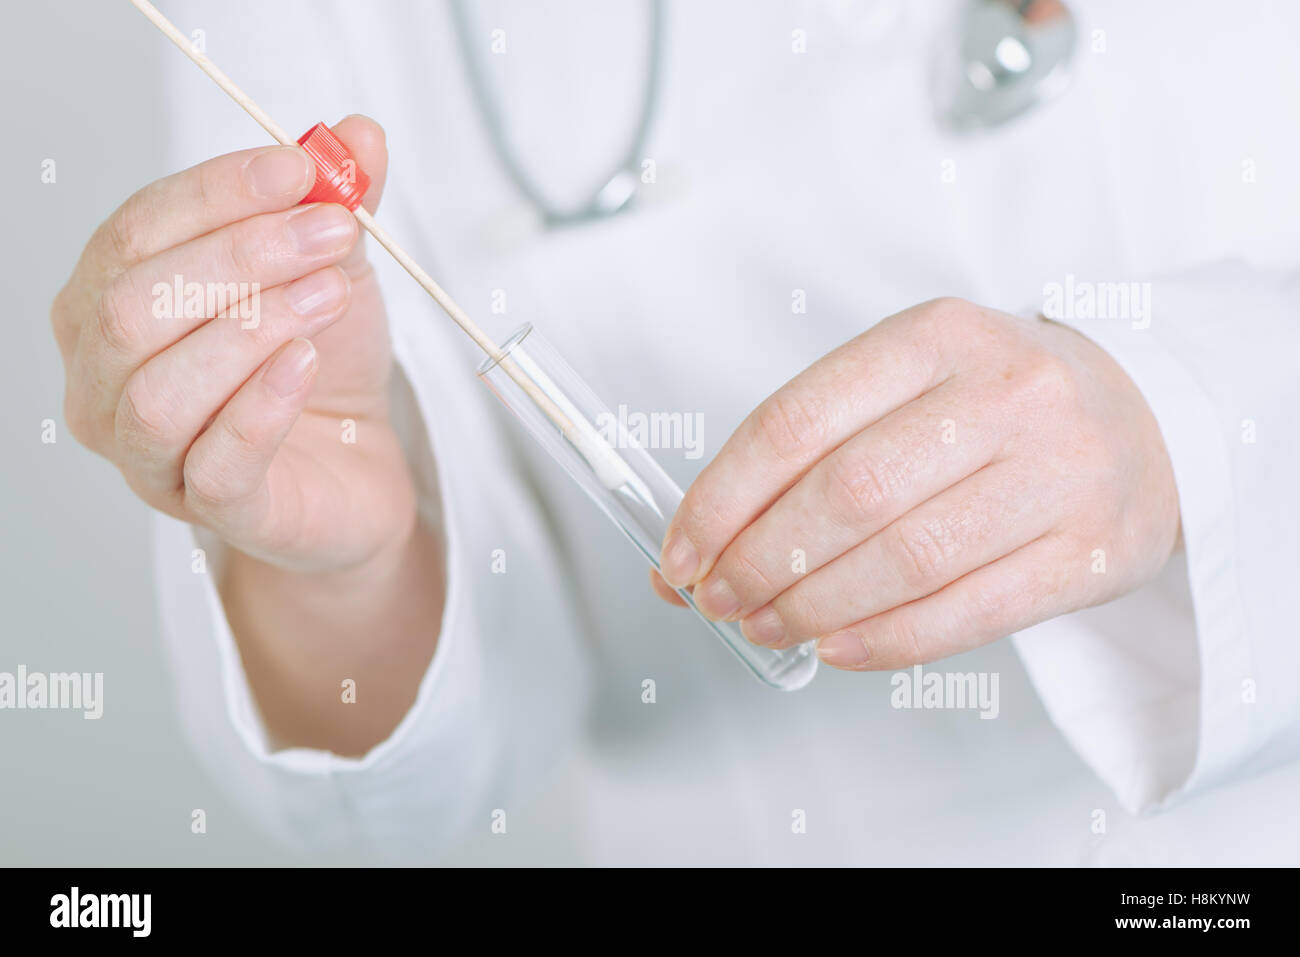 Spécialiste en médecine buccale holding femelle coton-tige et tube à essai, prêt à recueillir de l'ADN Banque D'Images